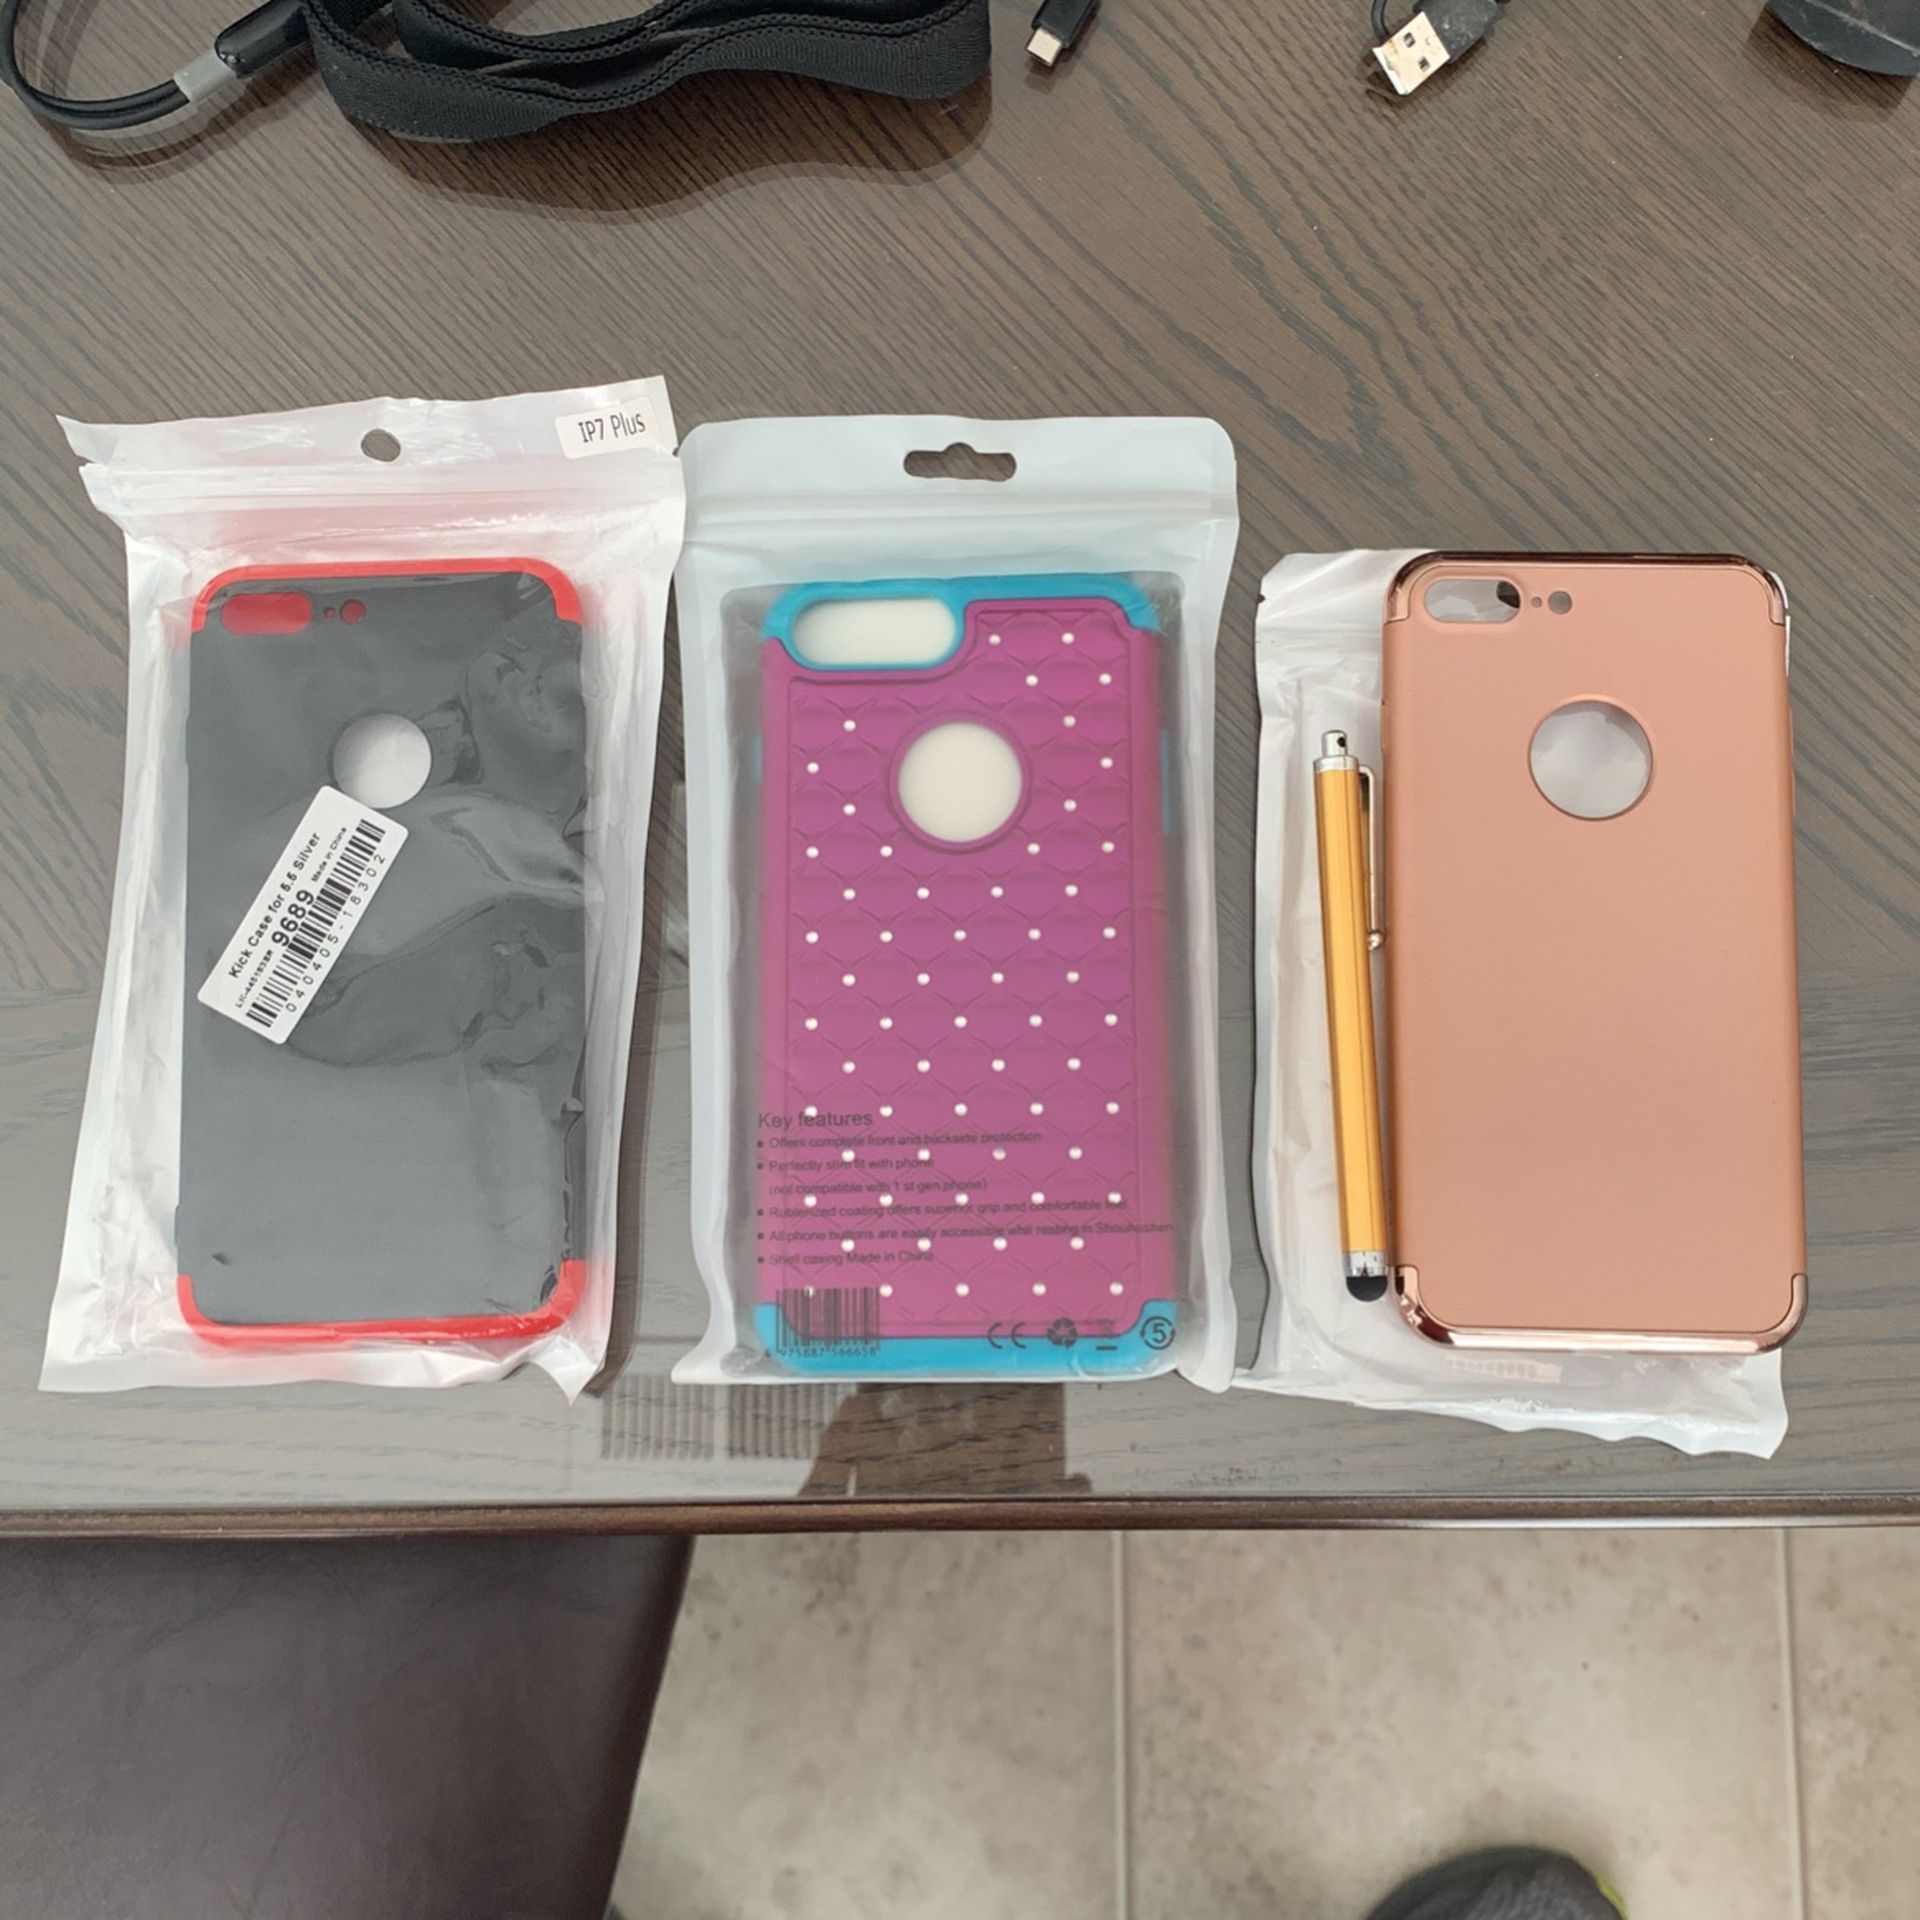 Case iPhone 7 Plus